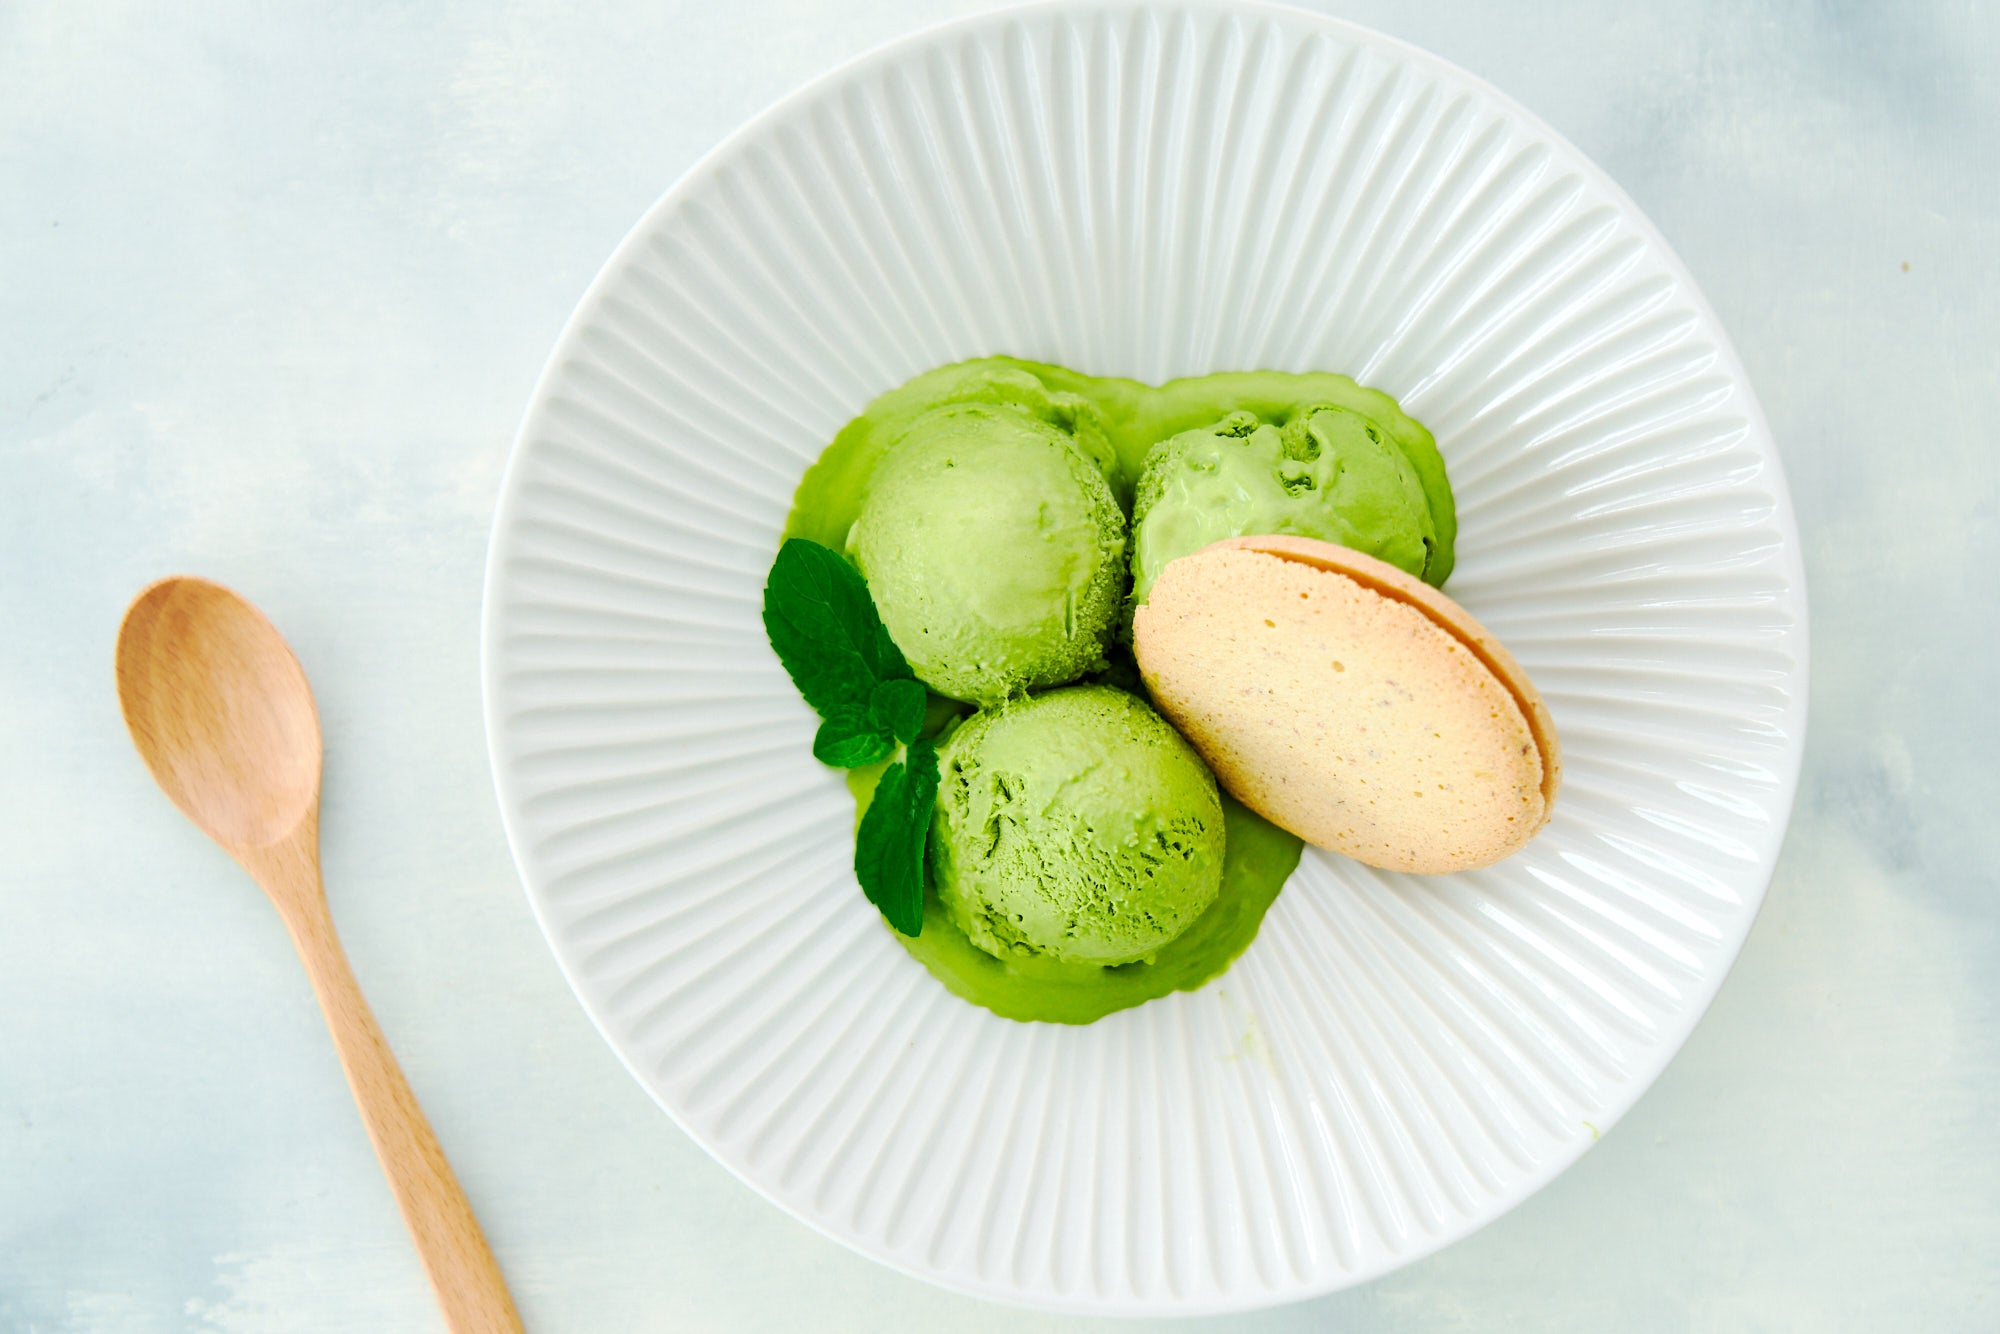 RECIPE: Marc Matsumoto's No-Churn Matcha Ice Cream